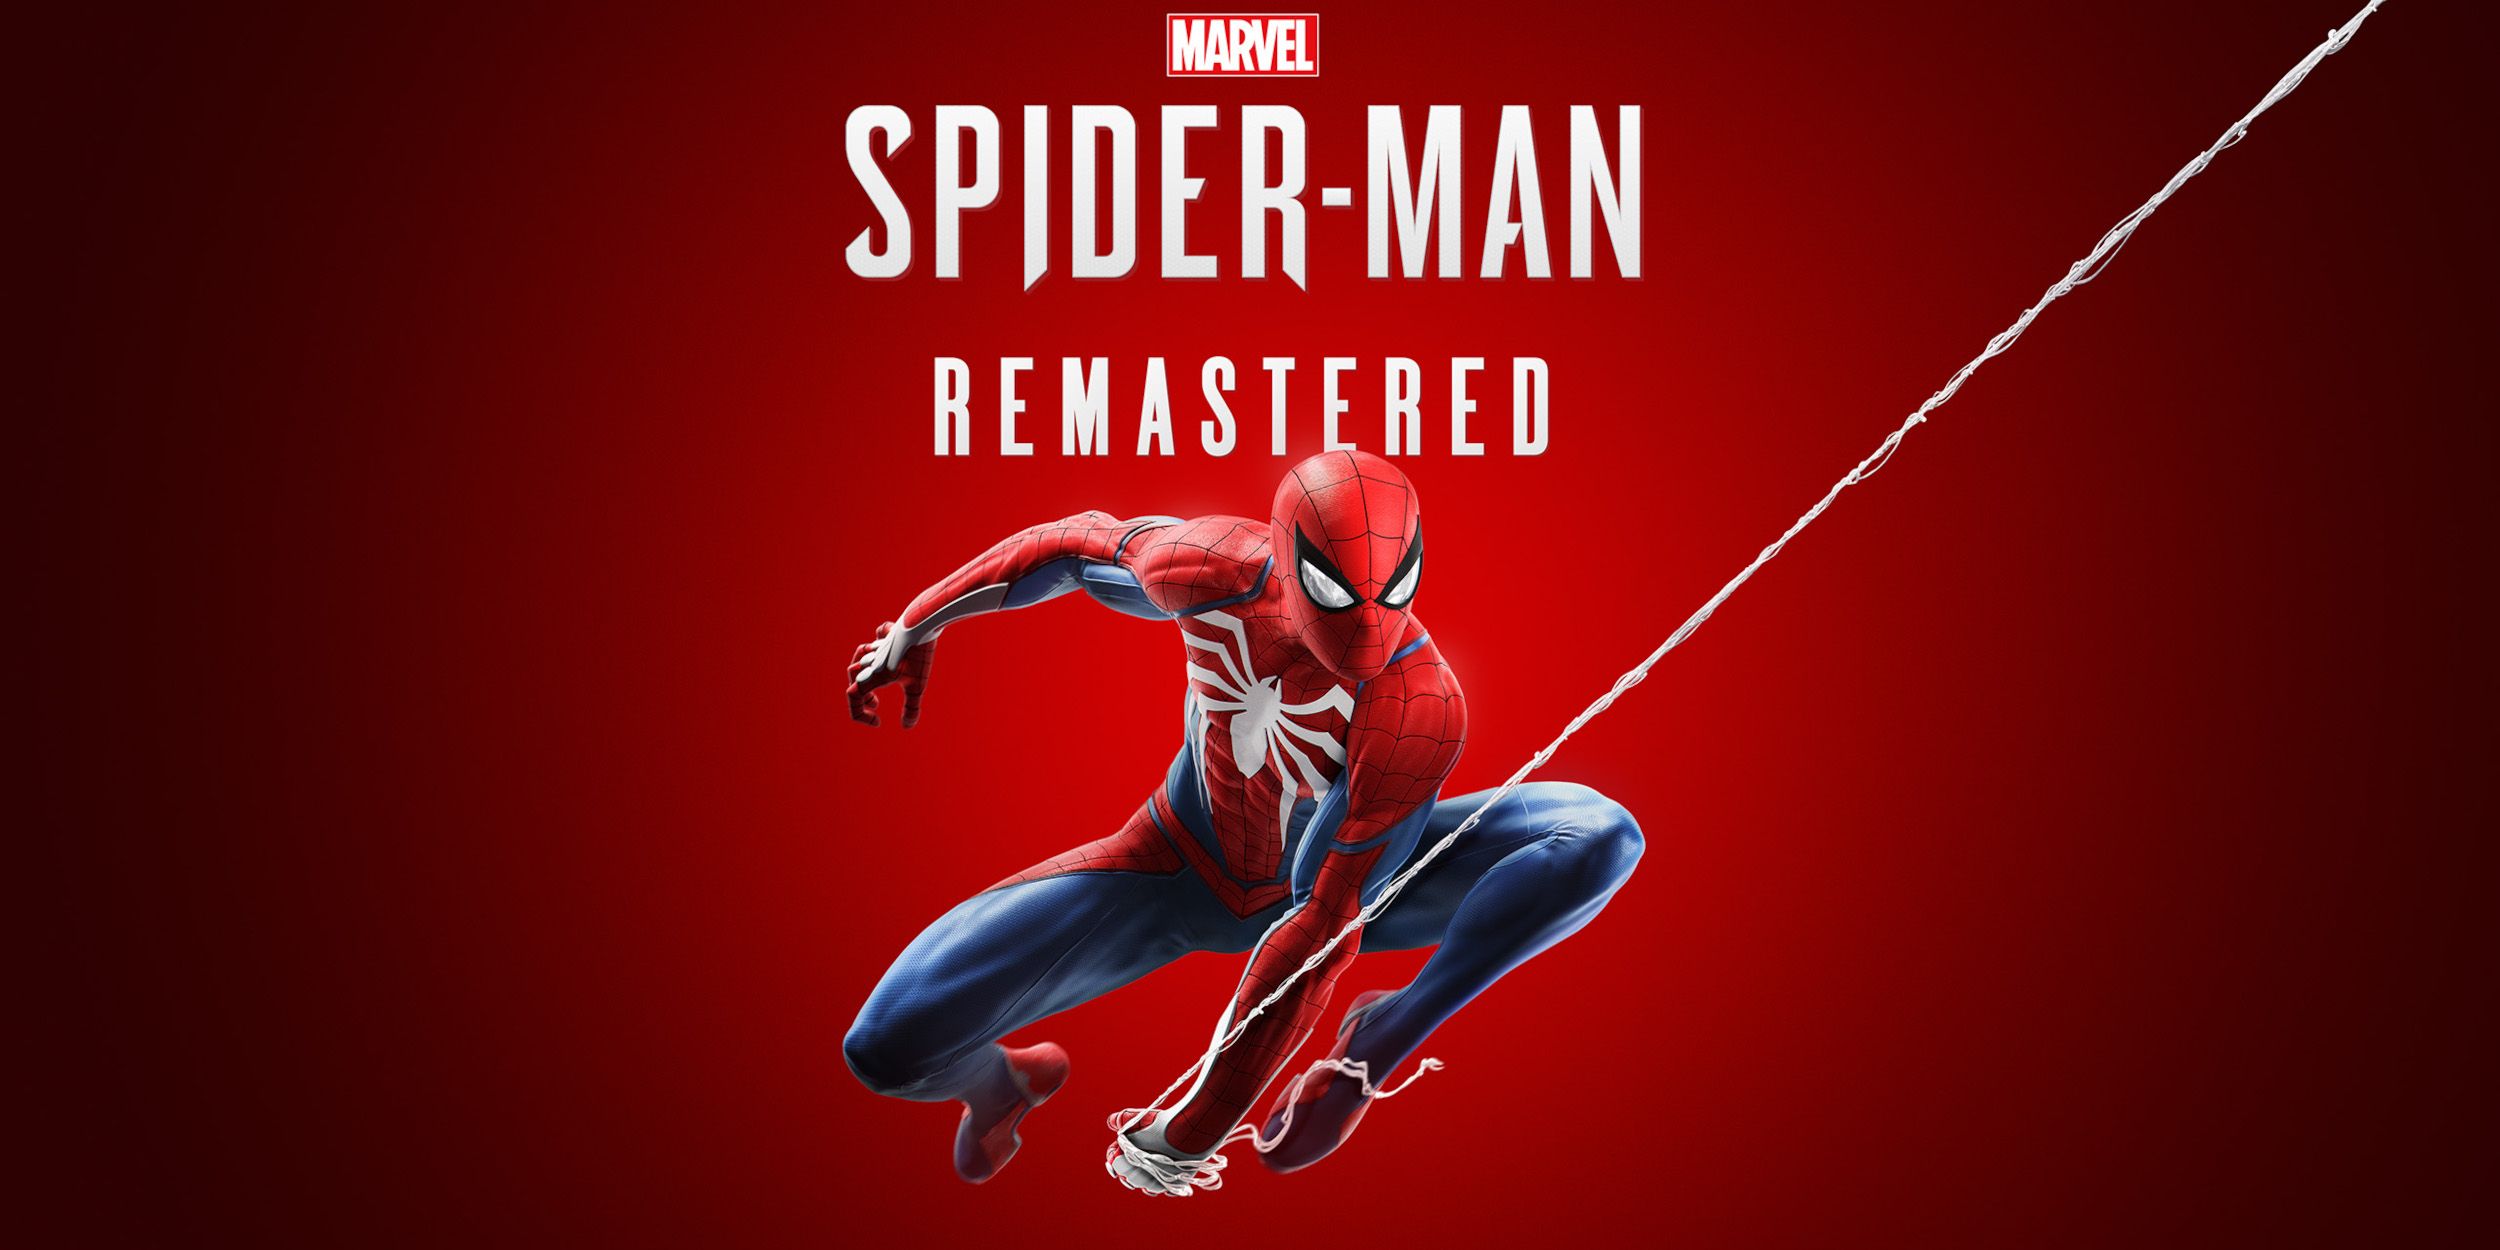 Revisión de PC de Marvel's Spider-Man Remastered: maravillosa acción de lanzar telarañas